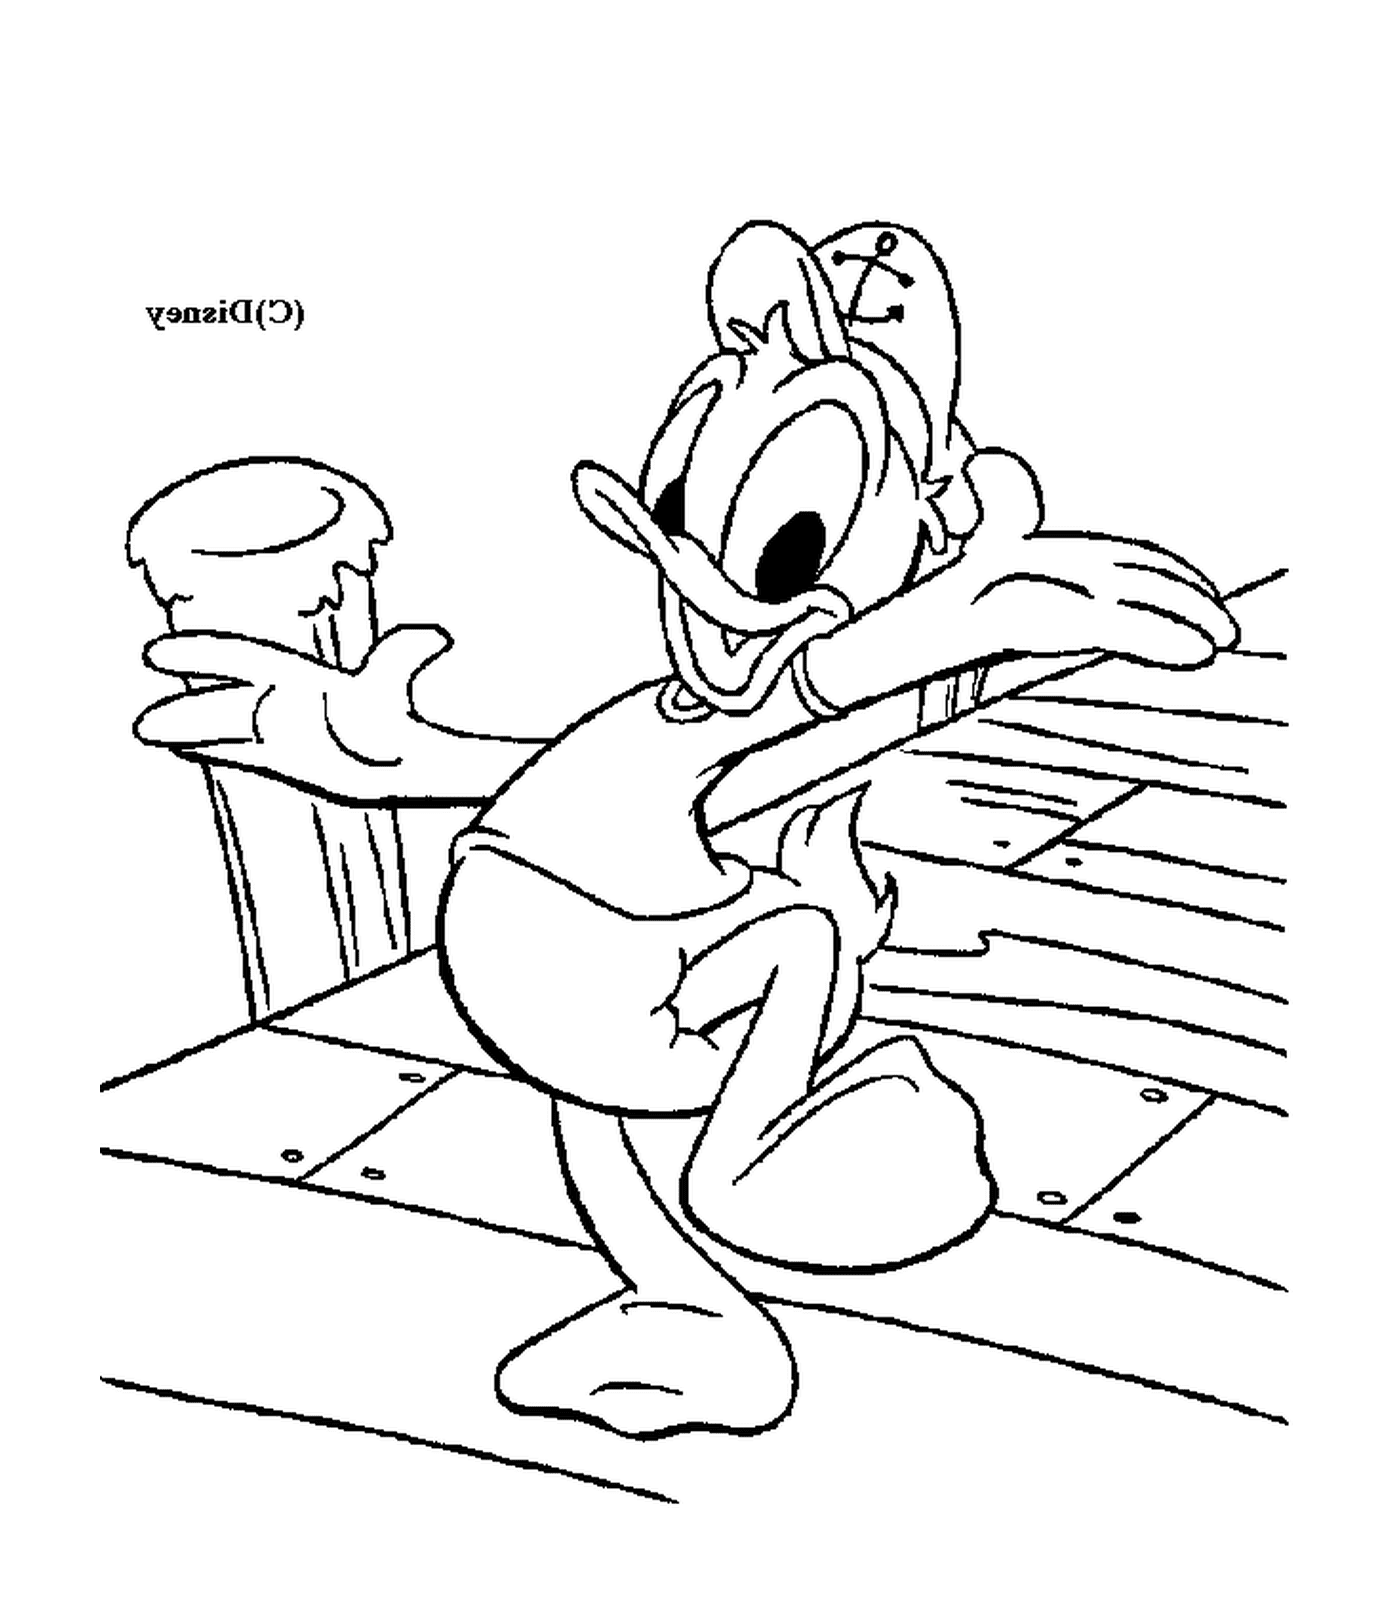   Donald, un marin reposant sur un banc 